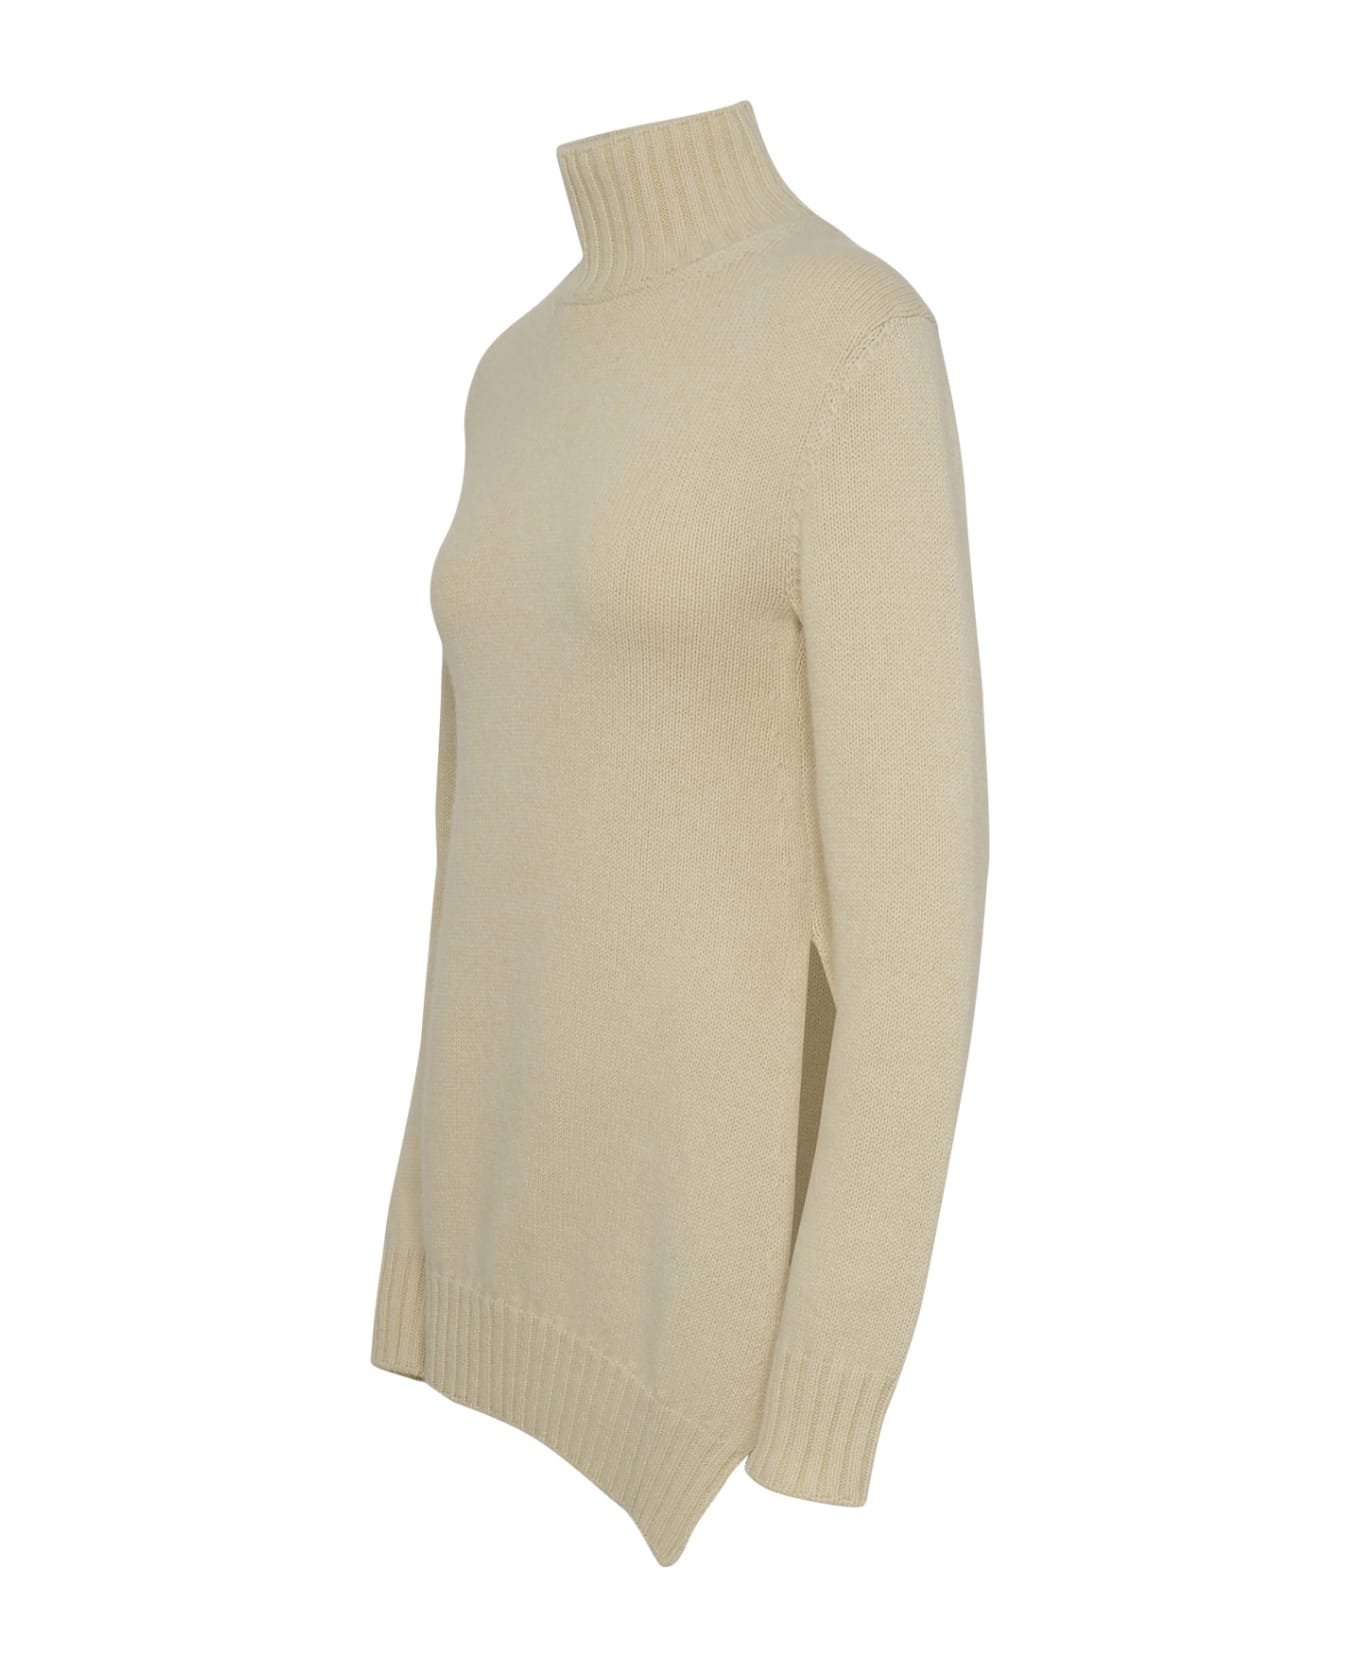 Jil Sander Ivory Yack Blend Turtleneck Sweater - Cream ニットウェア